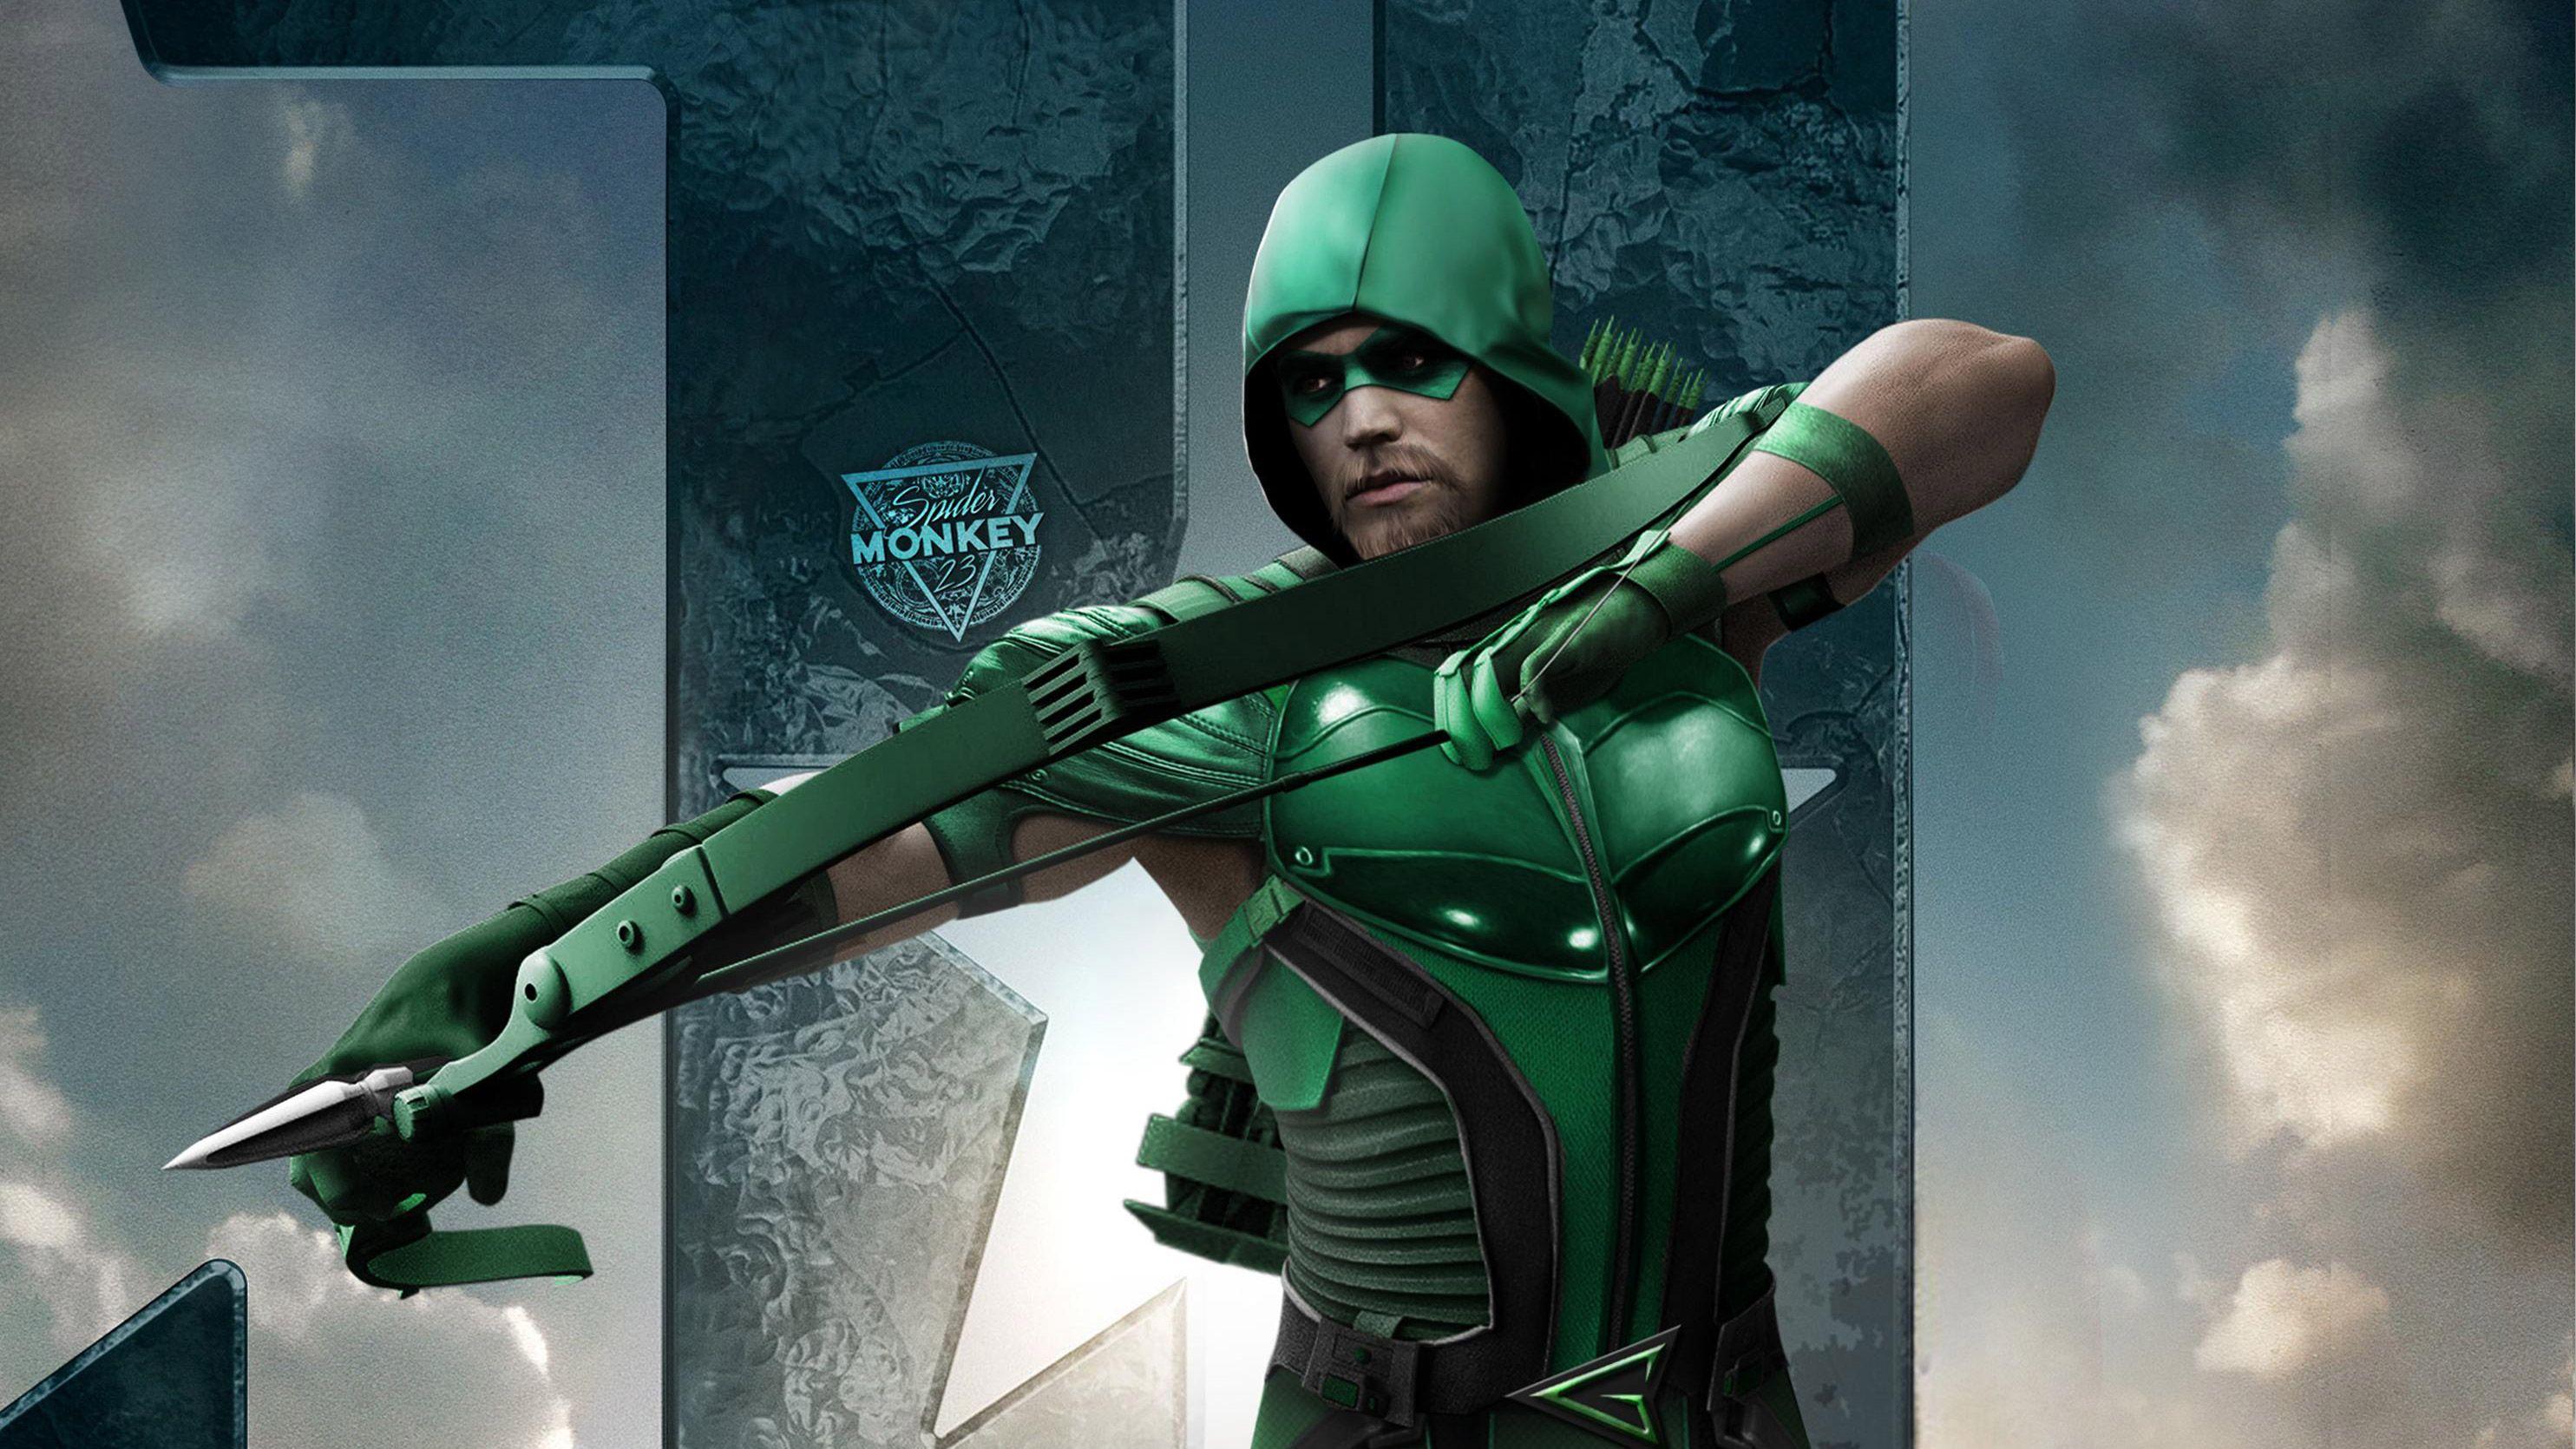 Arrow Justice League Fan Art, HD Movies, 4k Wallpaper, Image